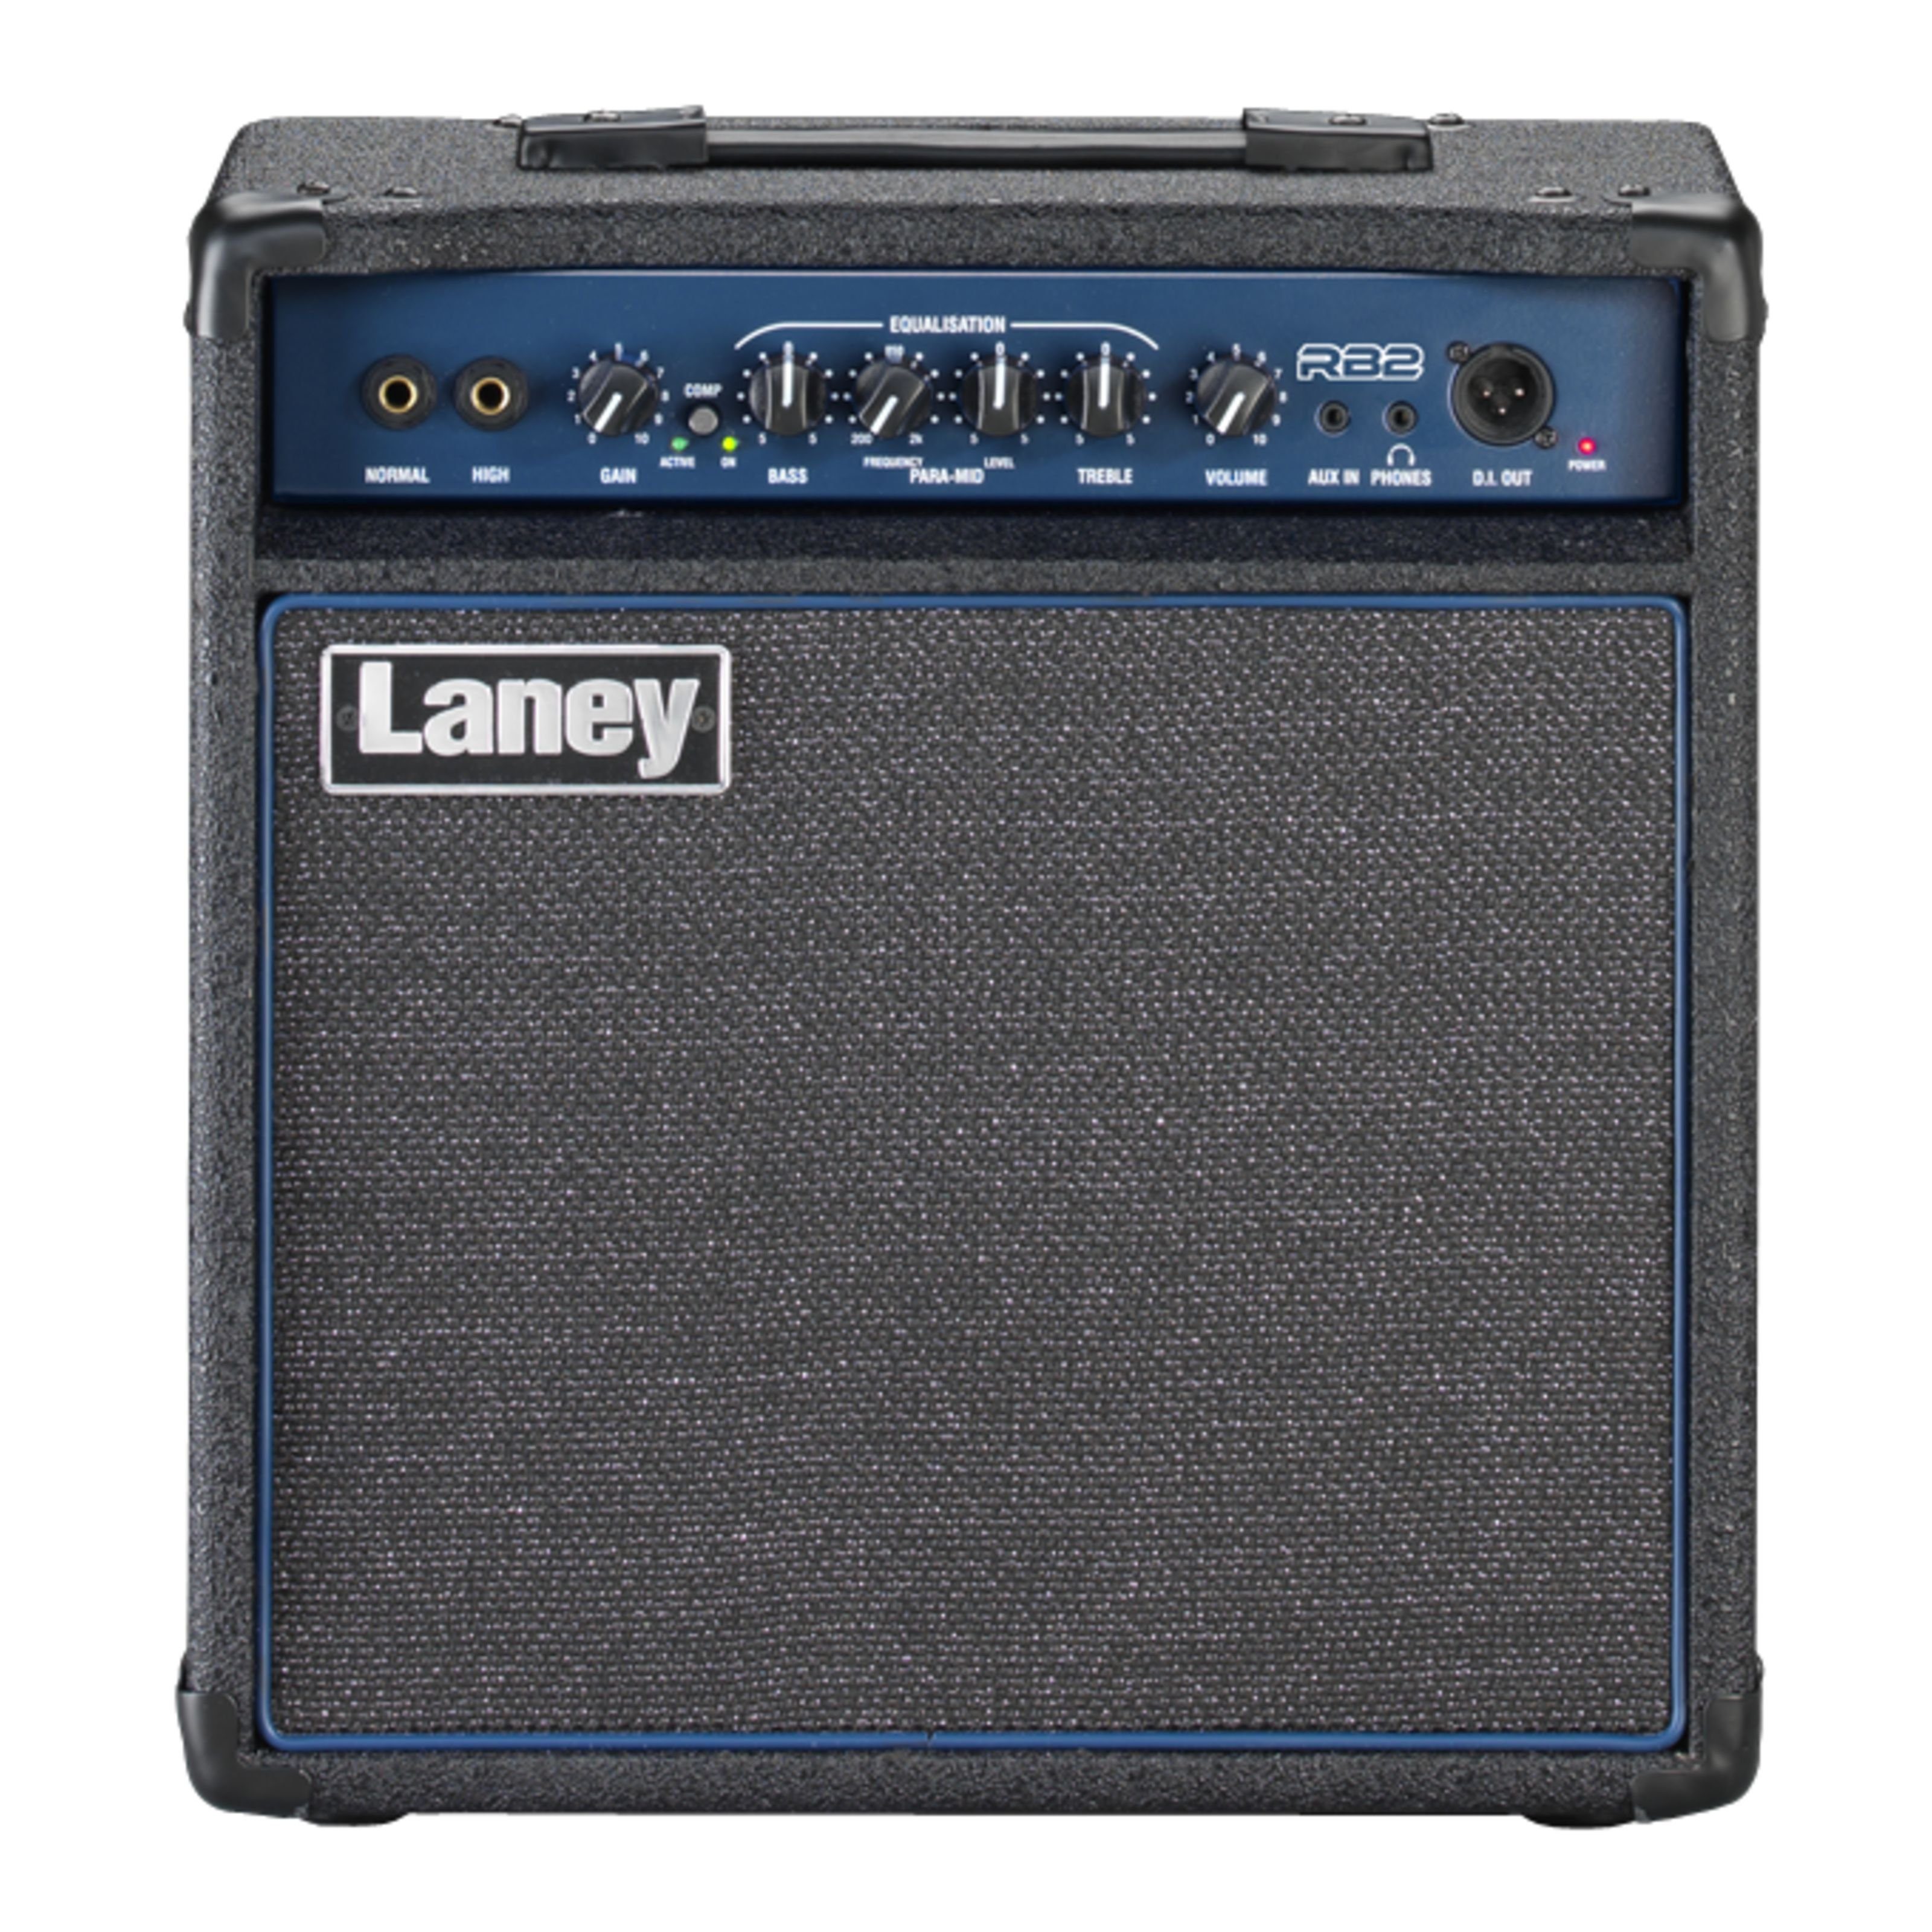 Verstärker) - Laney Bass Combo Verstärker Bass Combo RB2 (Richter